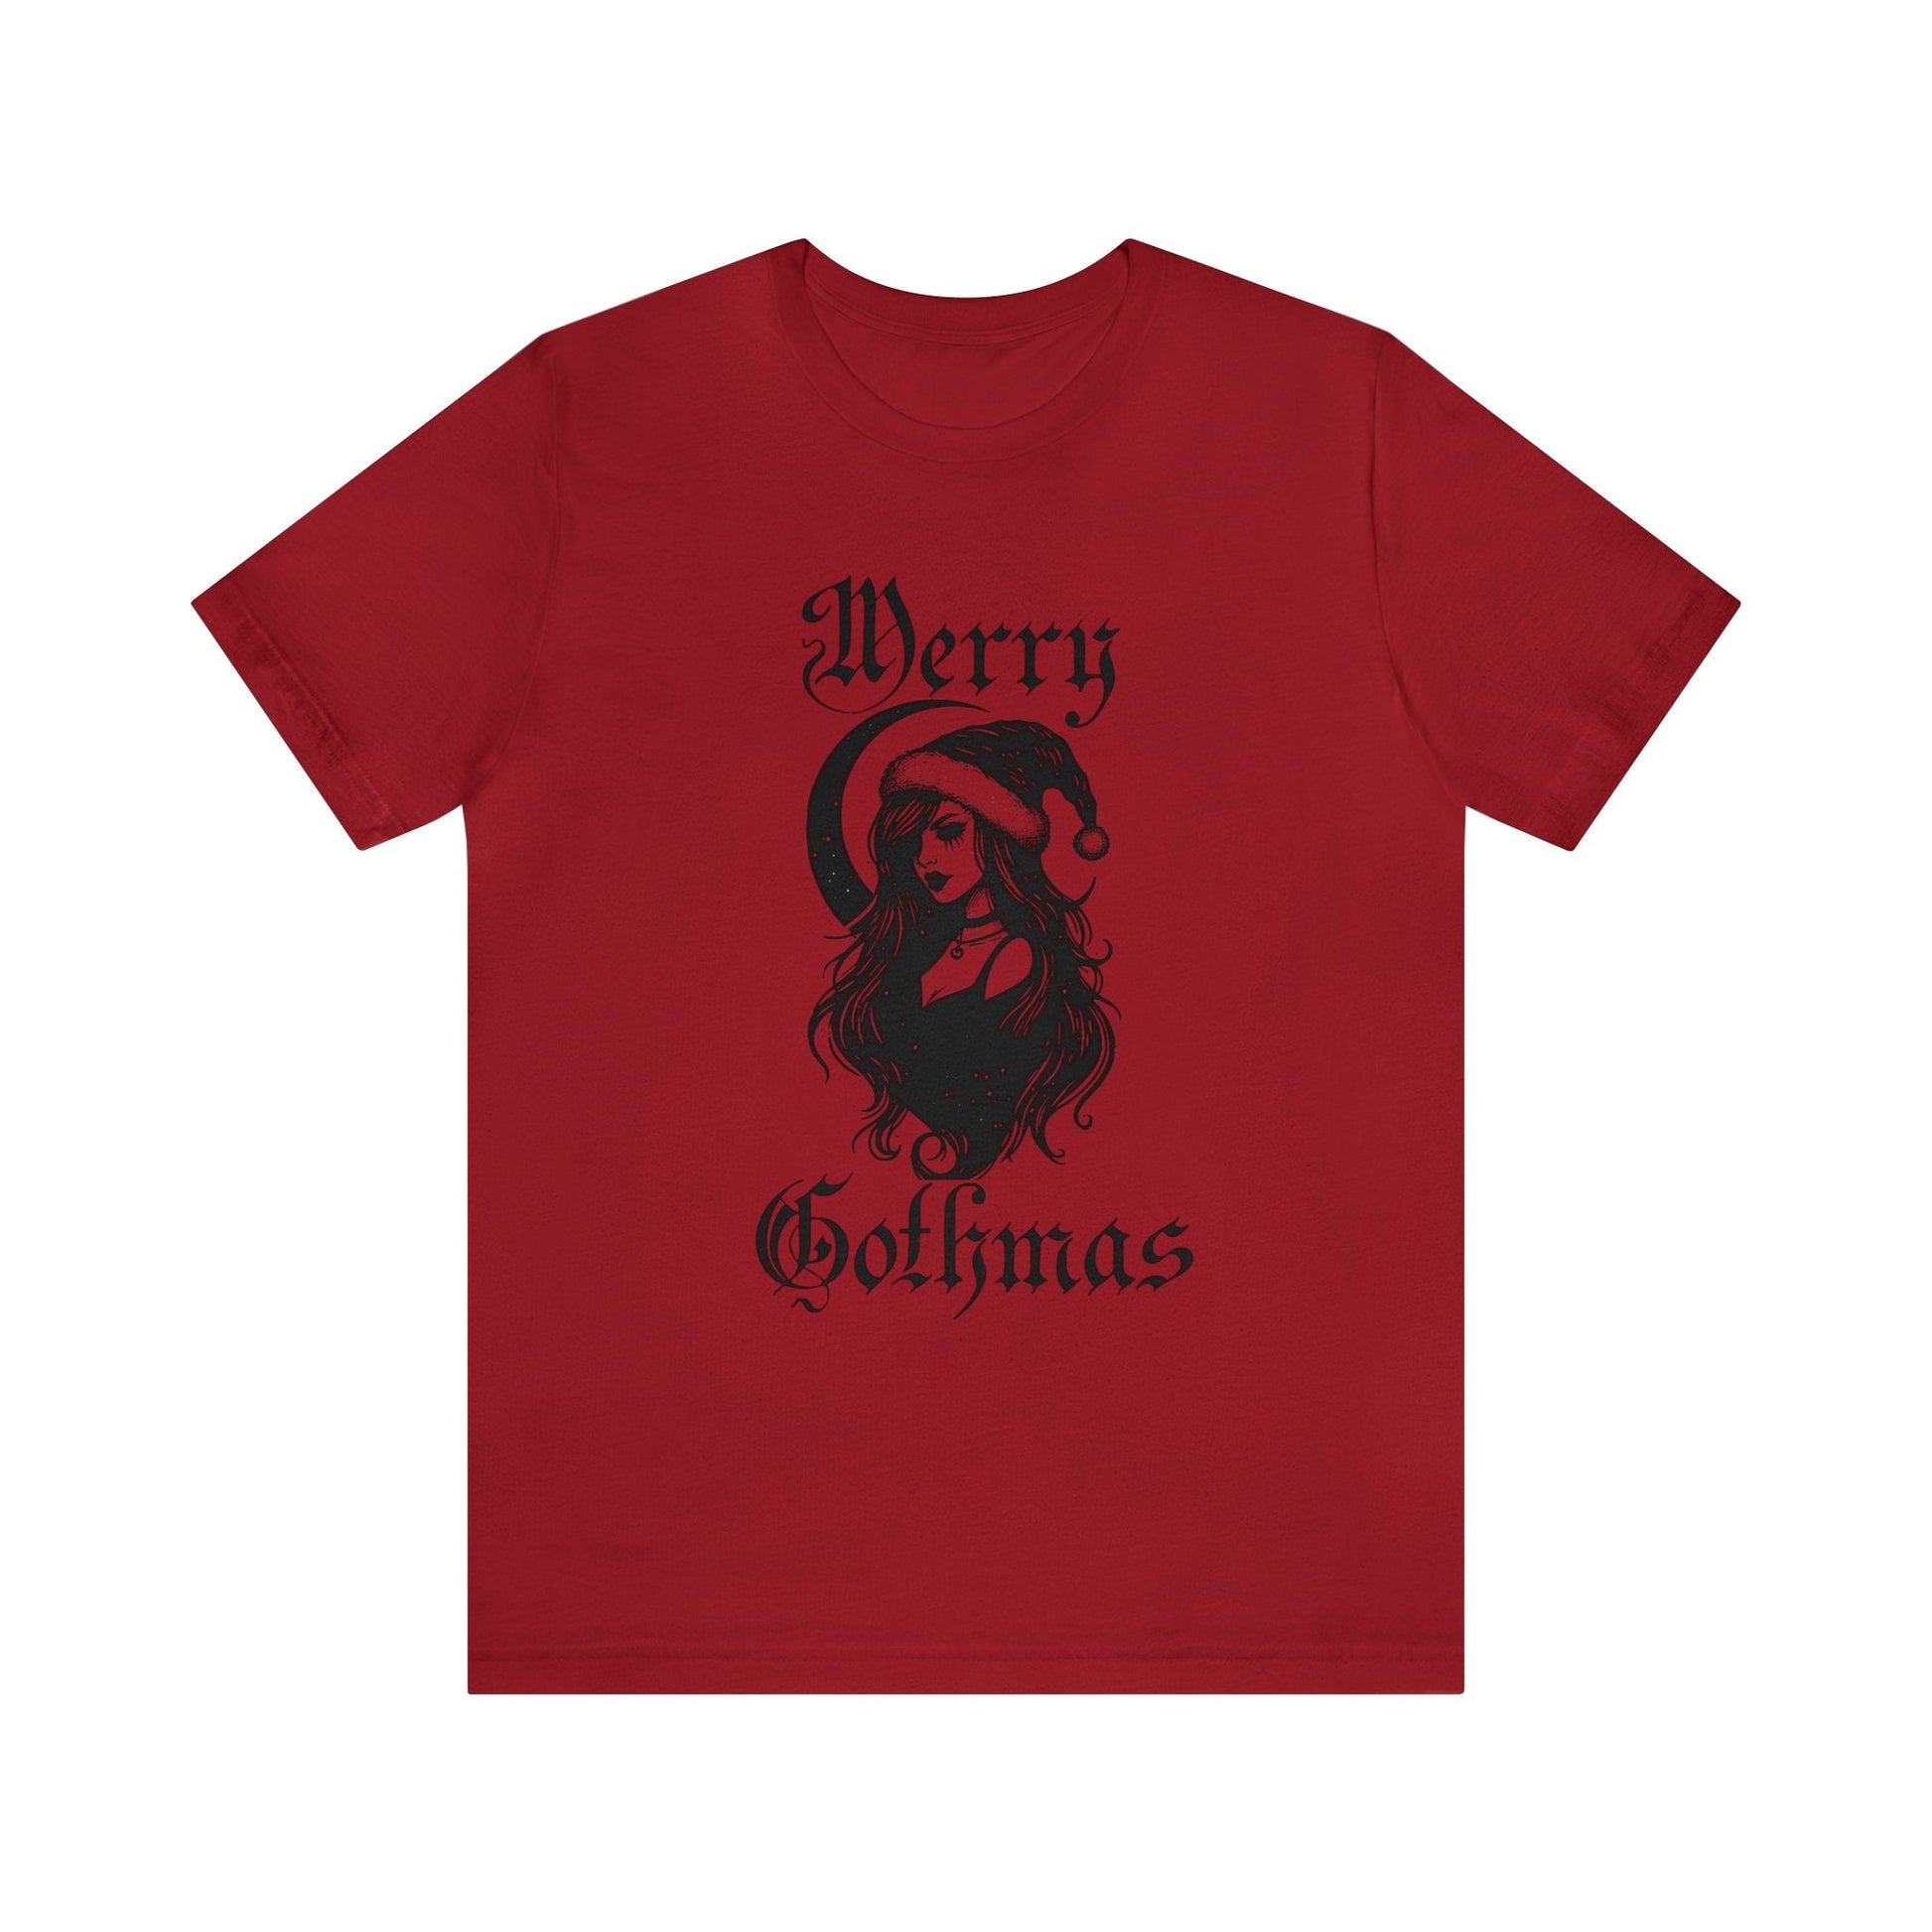 Merry Gothmas Short Sleeve Tee ShirtT - ShirtVTZdesignsCanvas RedXSchristmasclothingCotton